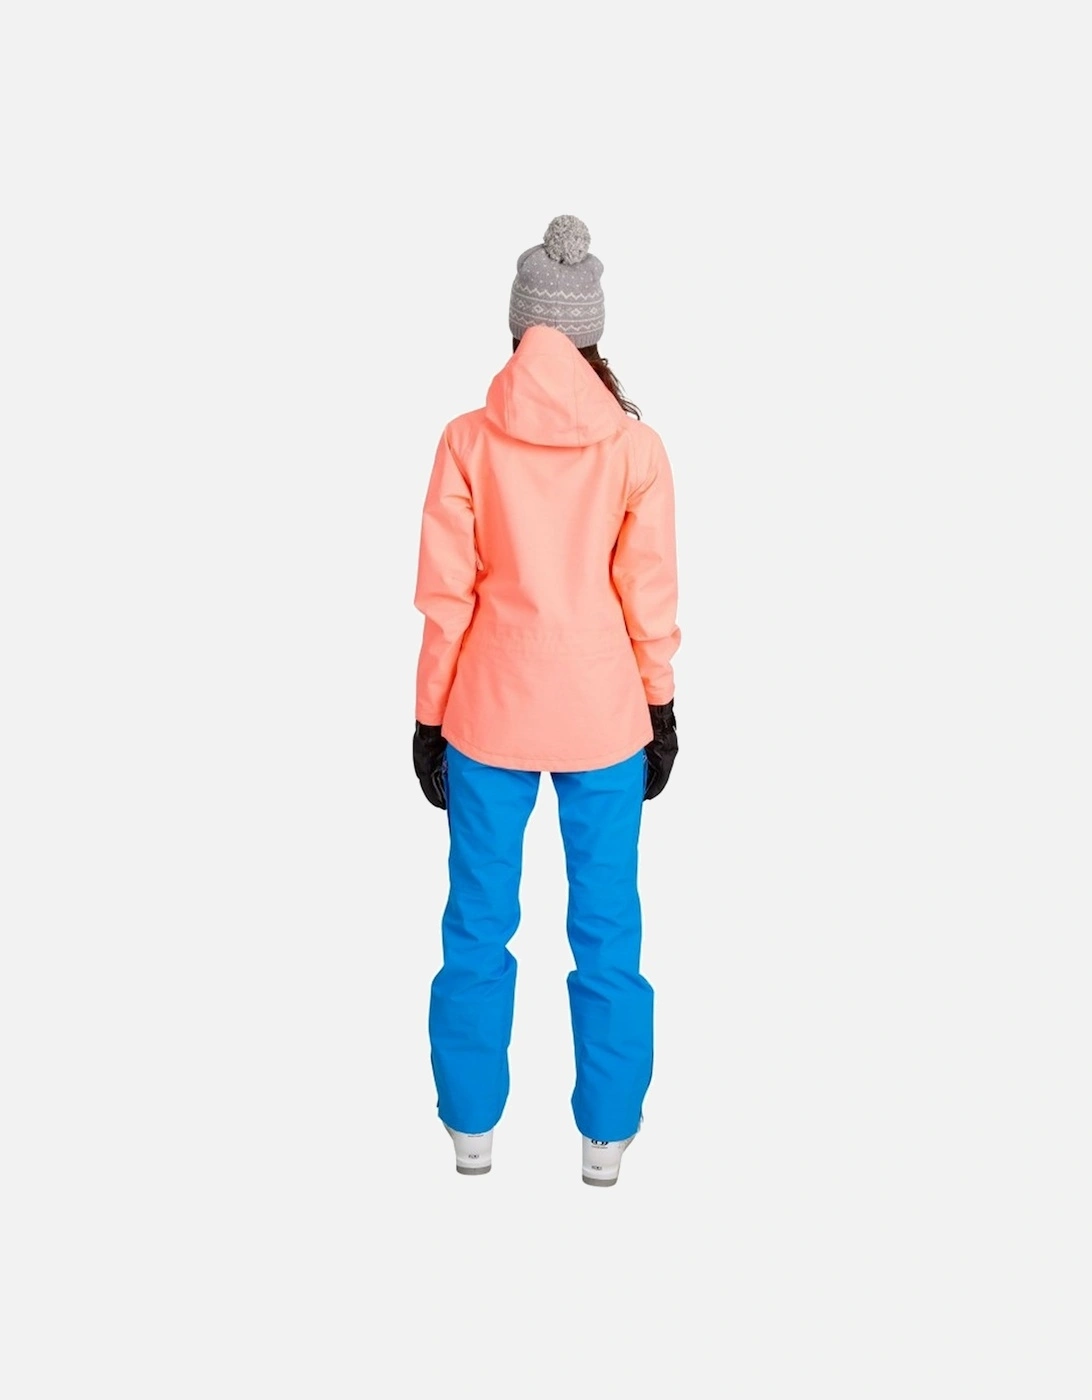 Womens/Ladies Tammin DLX Ski Jacket